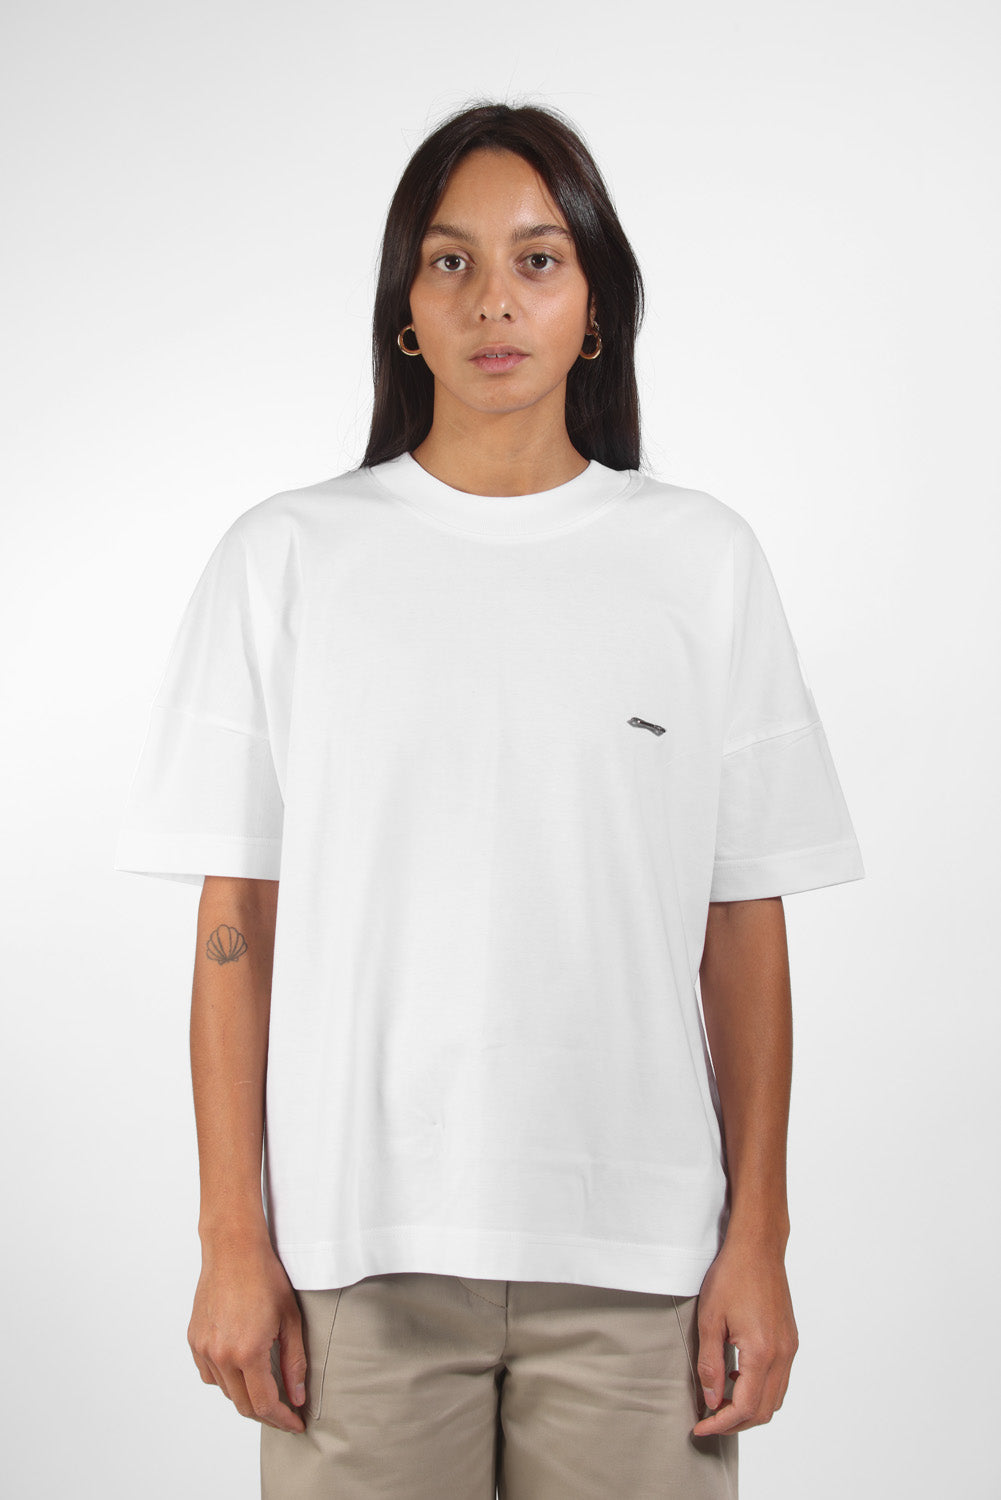 Charly white printed t-shirt